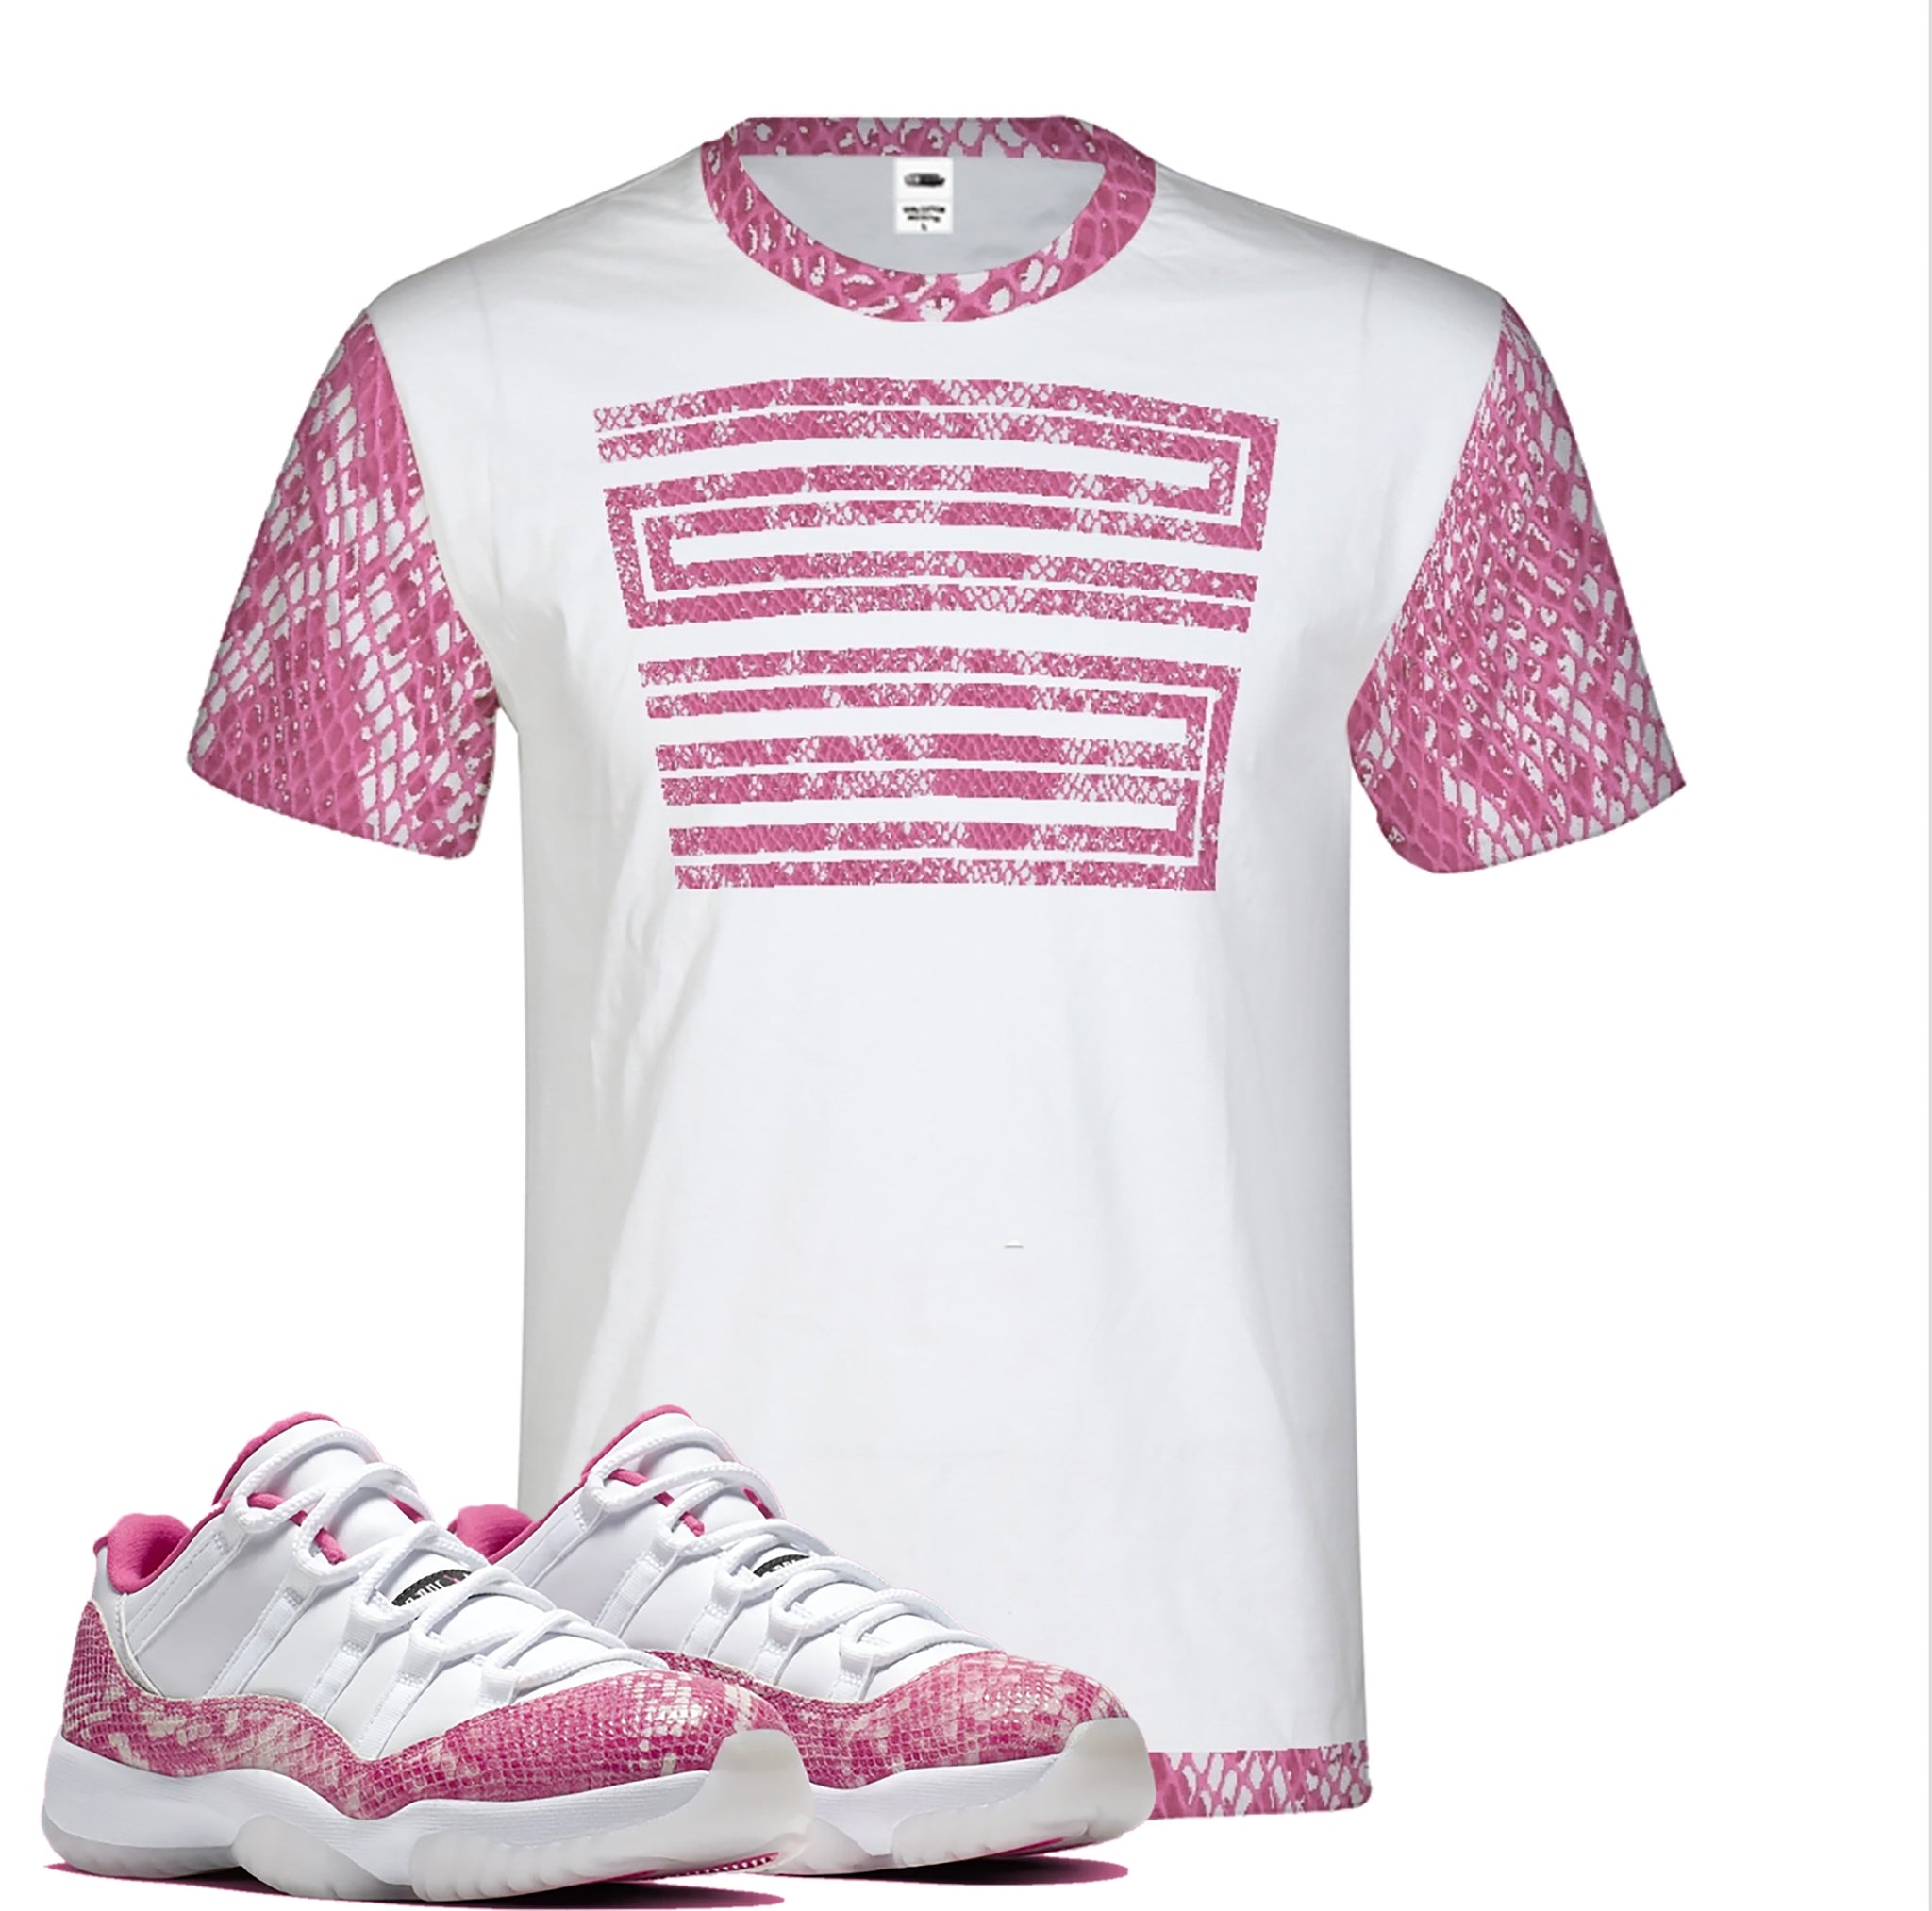 pink jordan 11 shirt